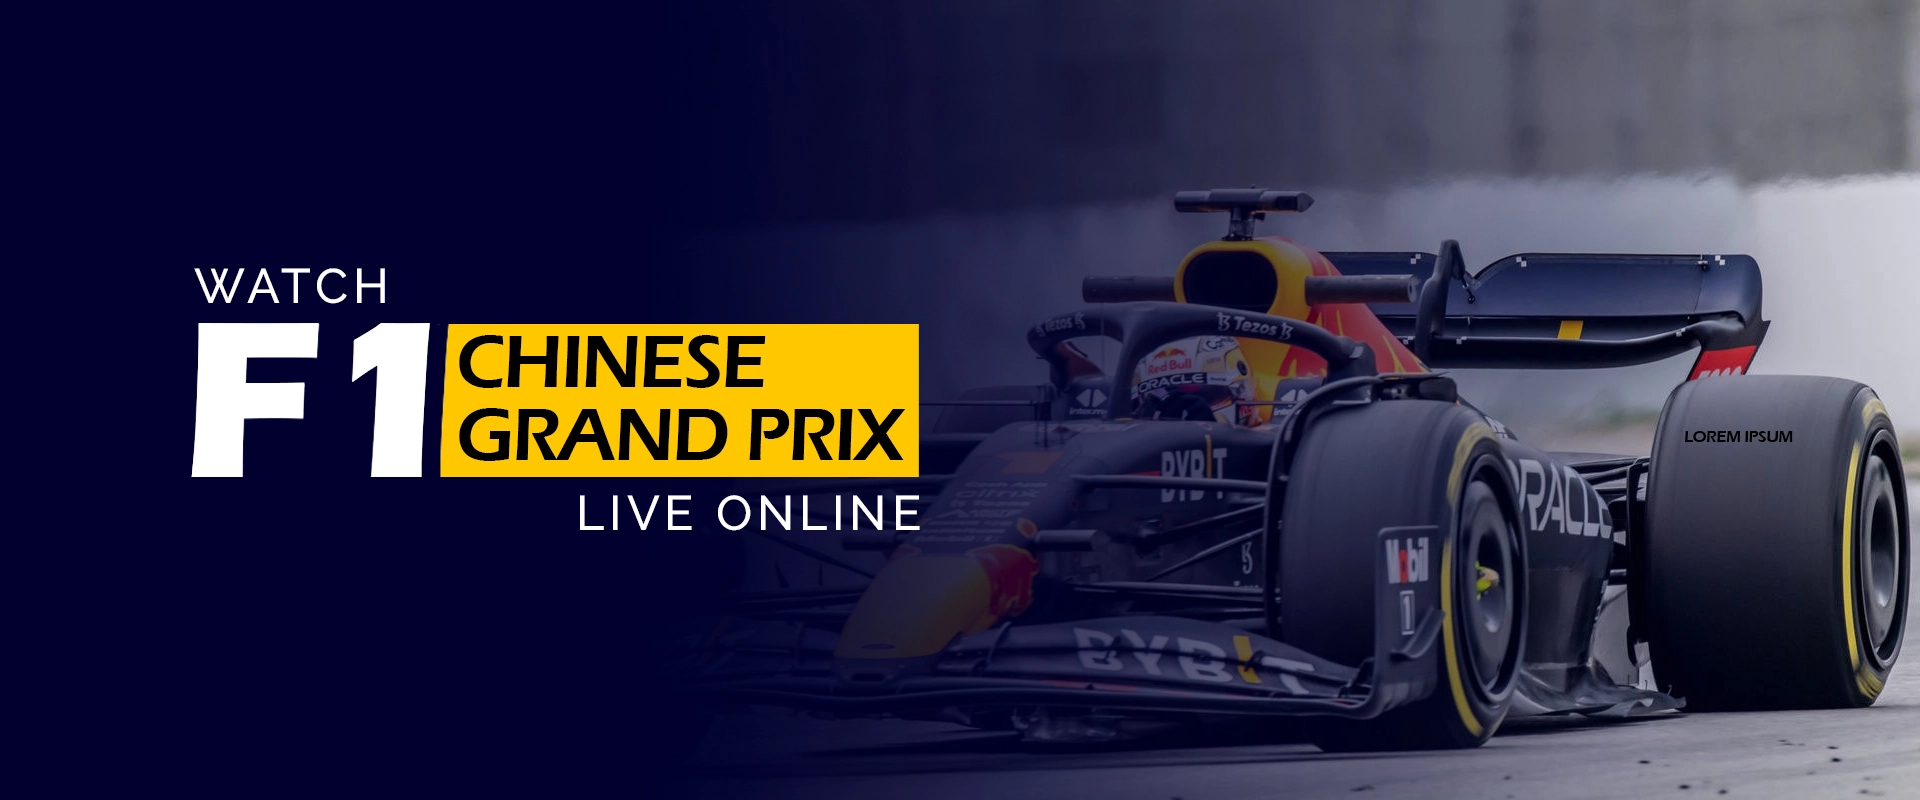 Regardez le Grand Prix de CHINOIS F1 en direct en ligne